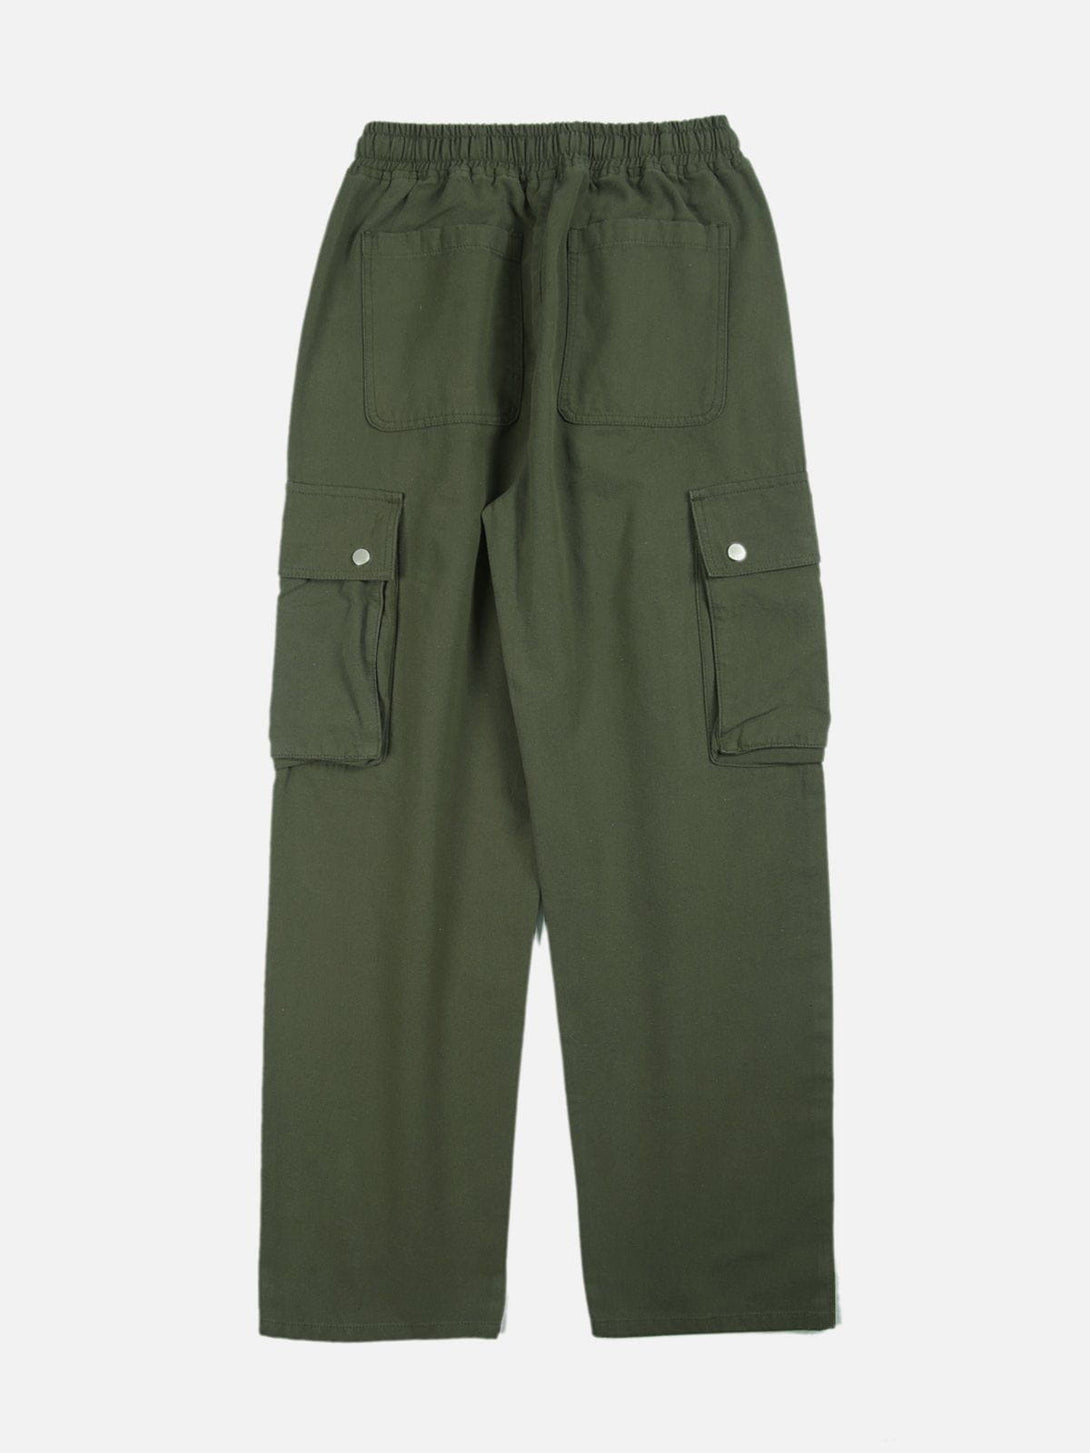 Levefly - Large Pocket Large Drawstring Pants - Streetwear Fashion - levefly.com